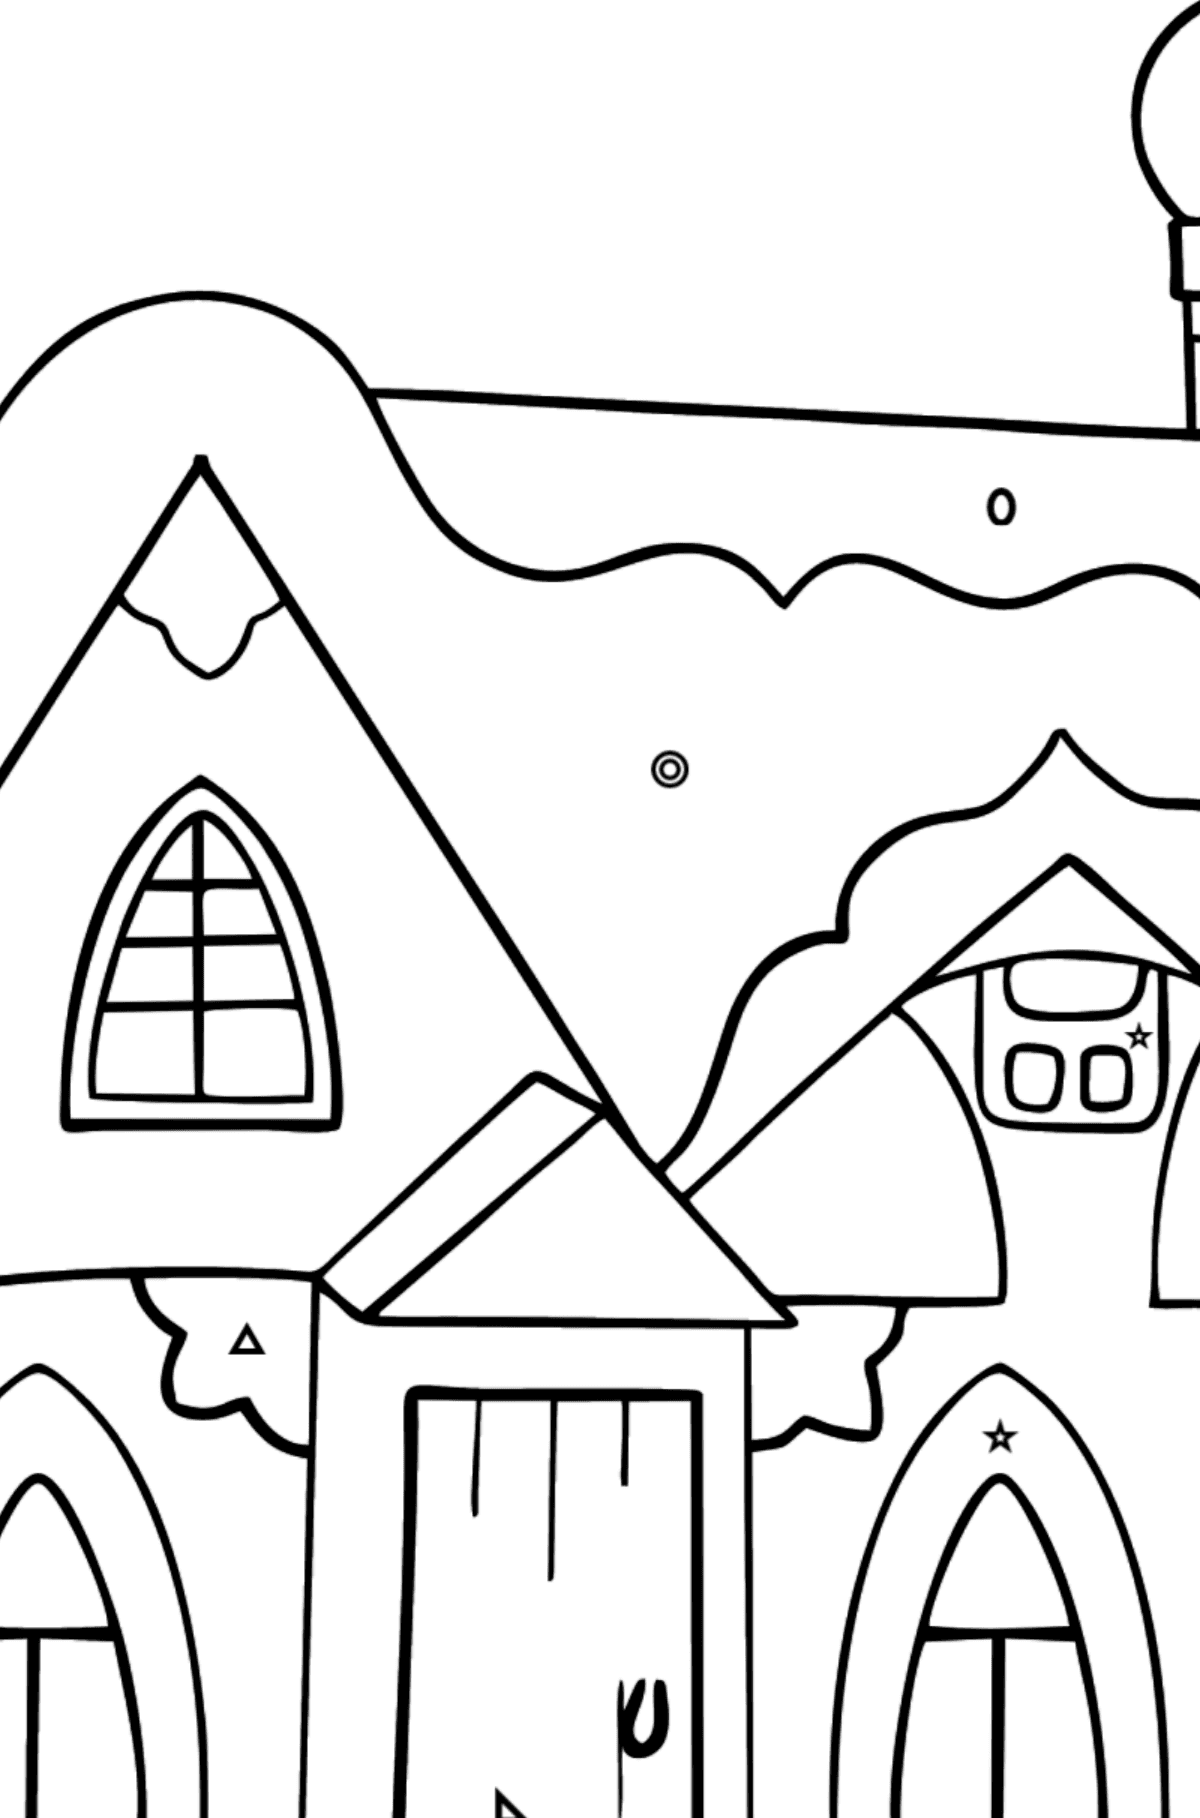 Tegning til fargelegging eventyrhus (enkelt) - Fargelegge etter geometriske former for barn